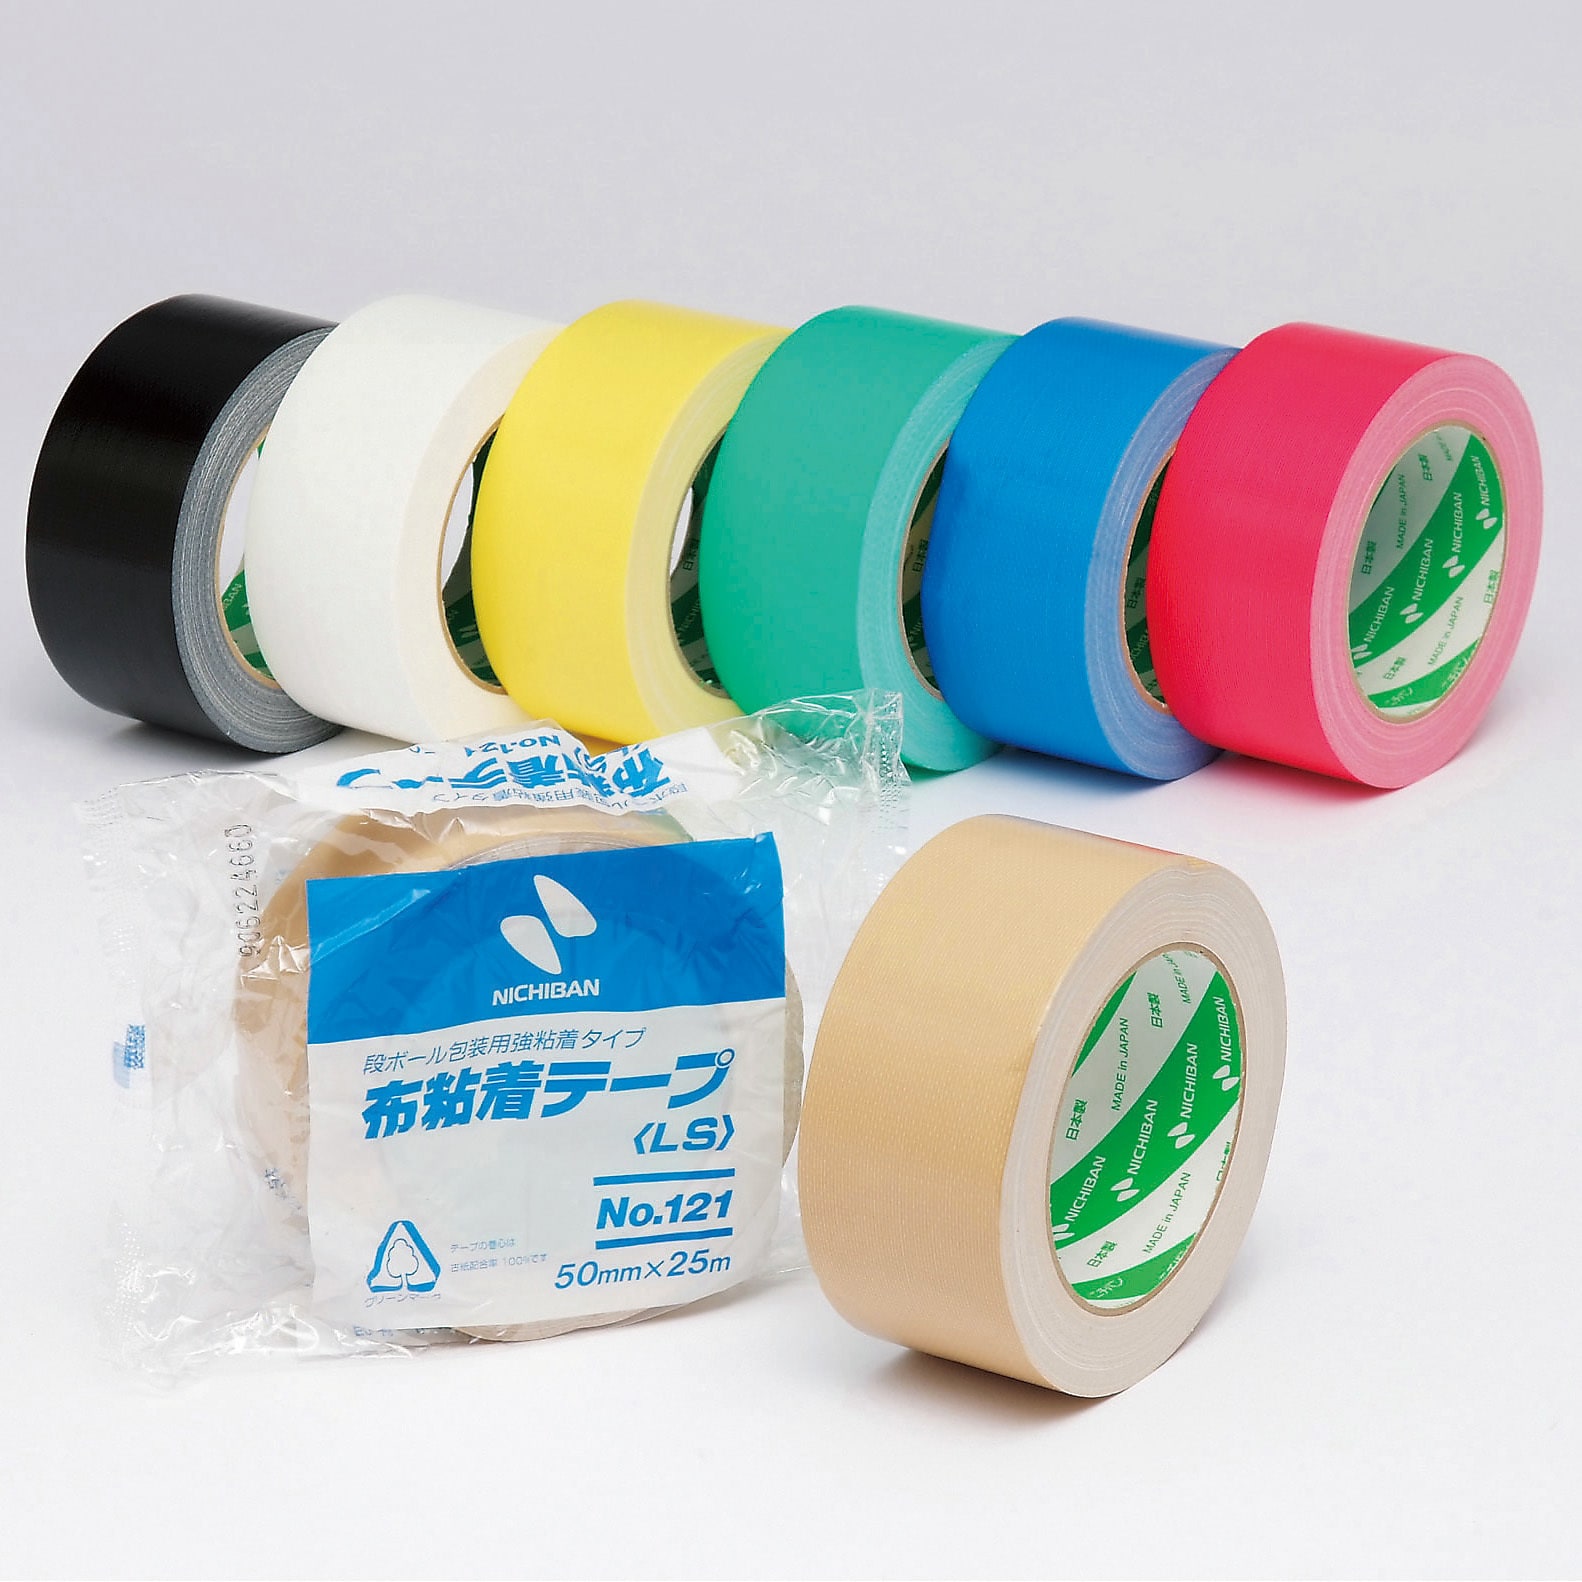 寺岡製作所 カラーオリーブテープ NO.145 緑 50mm×25m 30巻セット - 2